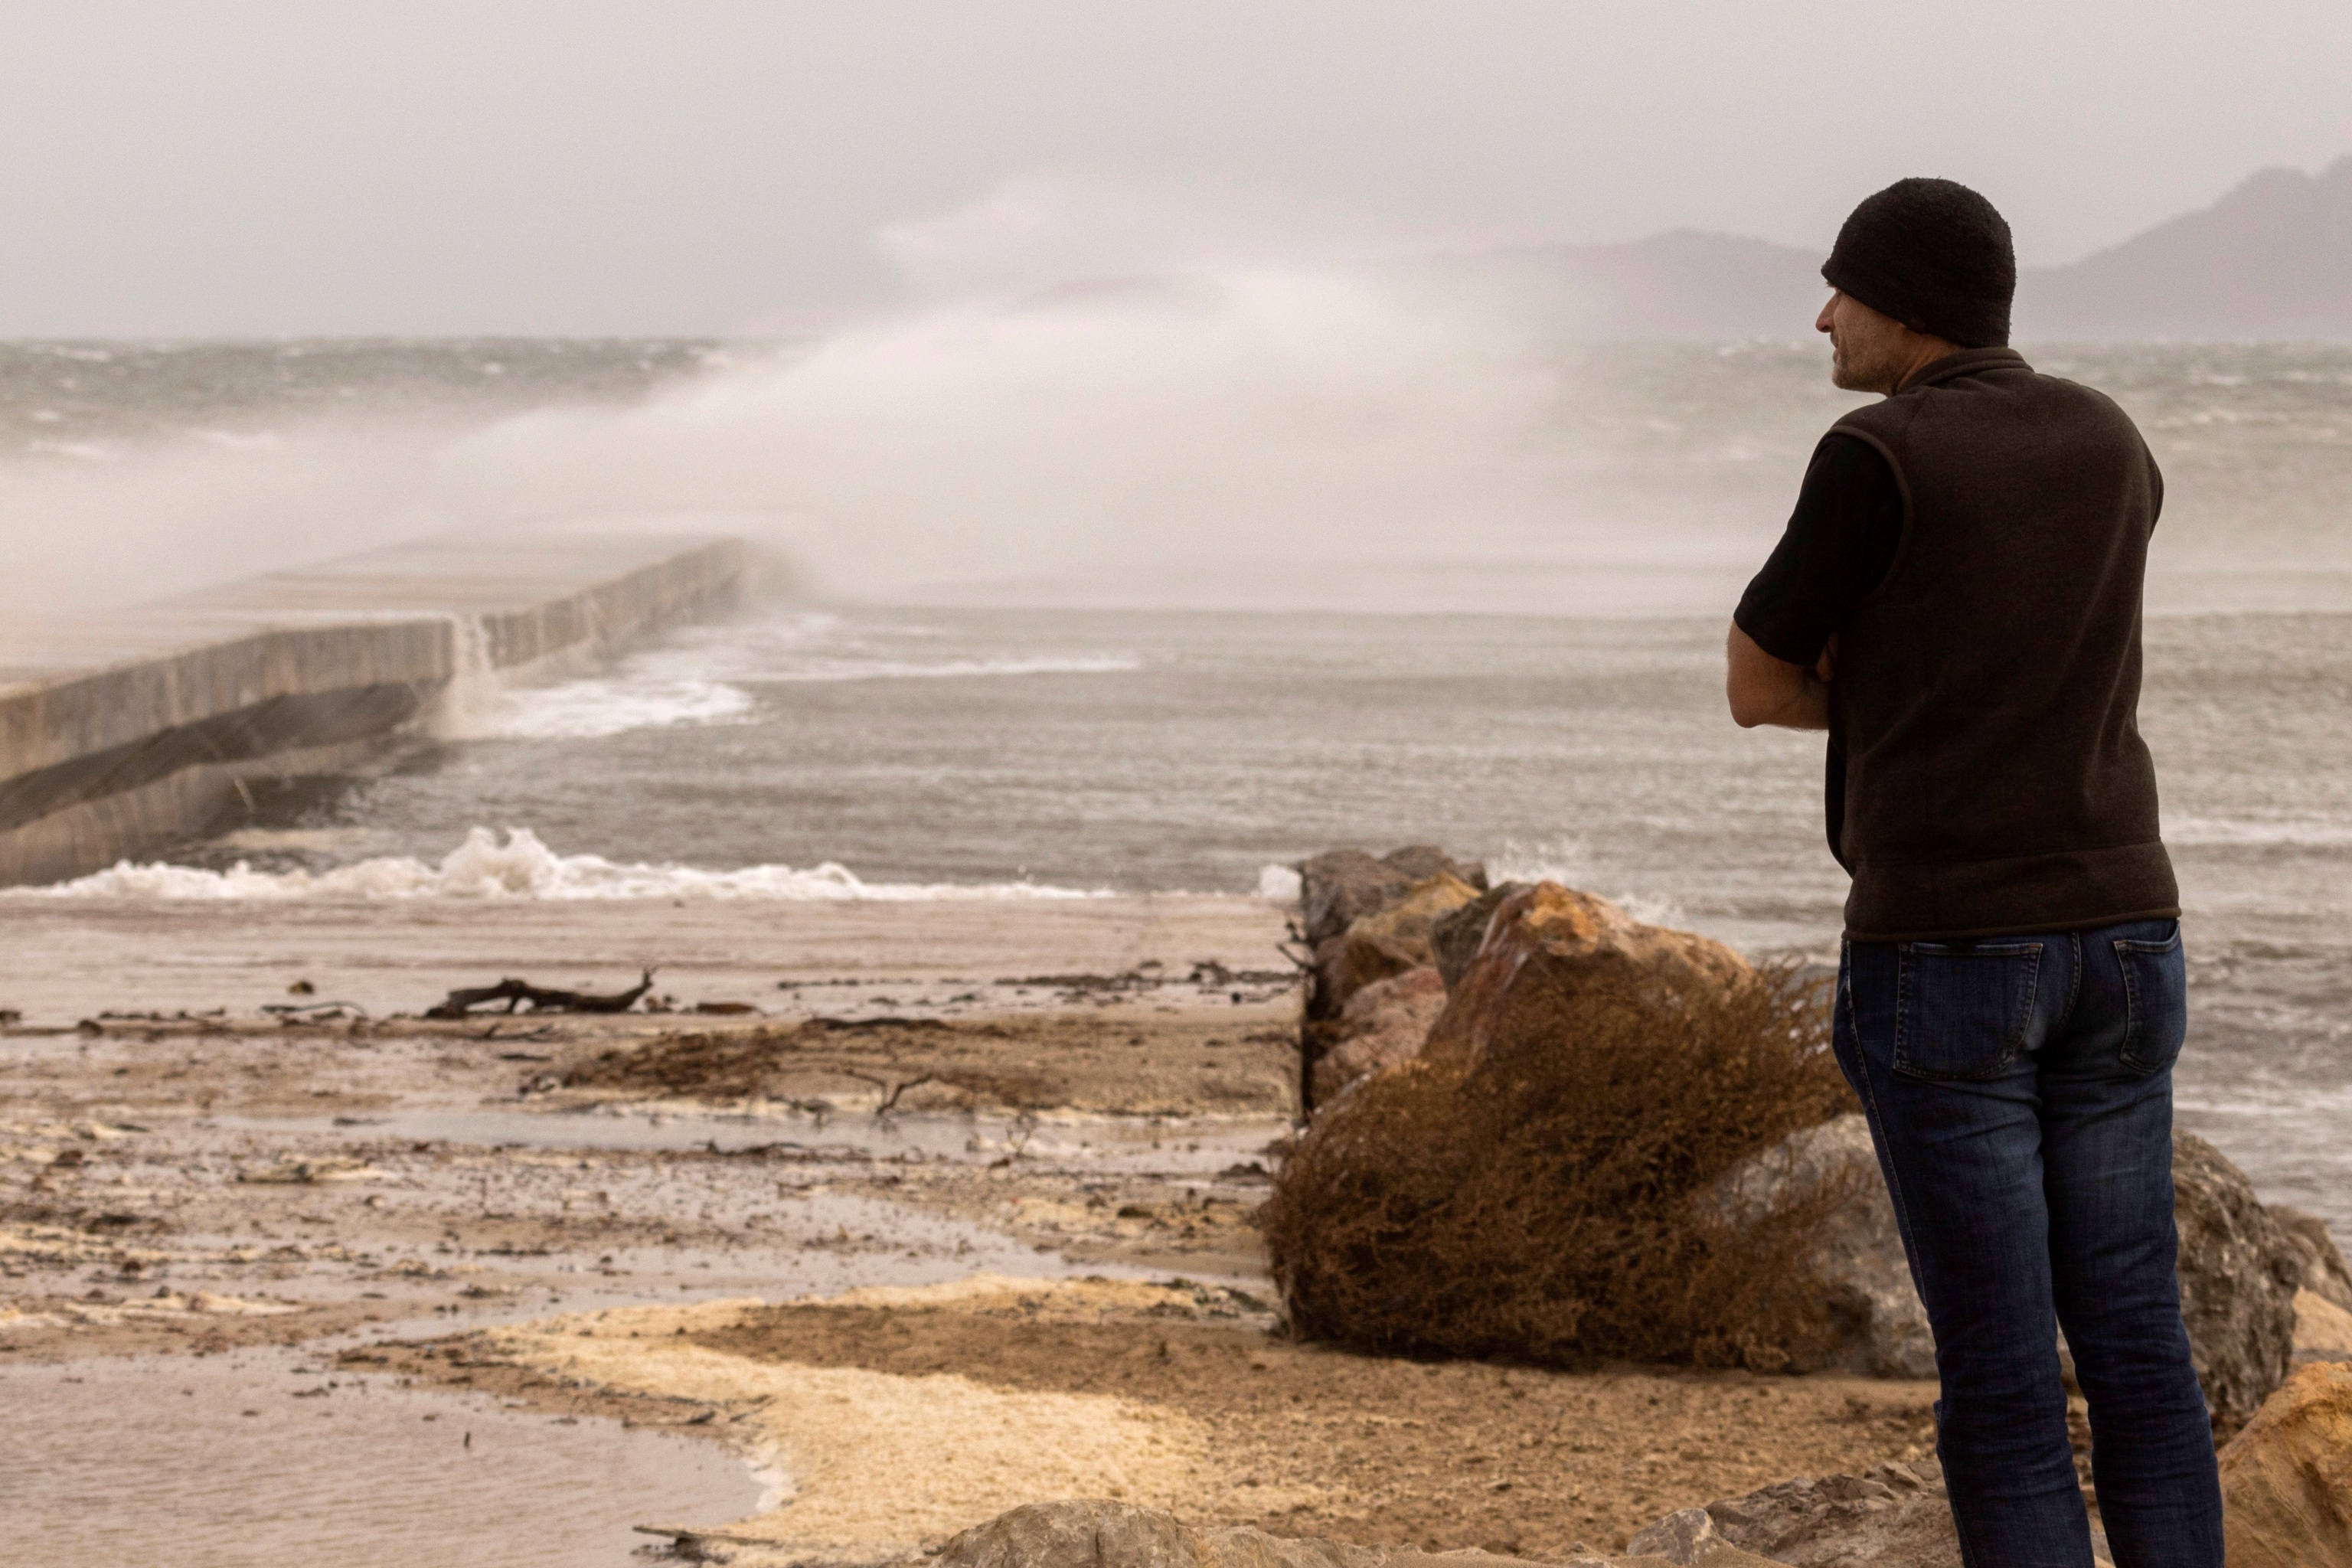 Un hombre contempla el fuerte oleaje en el puerto de Pollena en una jornada con fuertes vientos en la que la borrasca Blas afecta a varias zonas de Mallorca y otros puntos de Baleares y otras provincias mediterrnea espaolas.